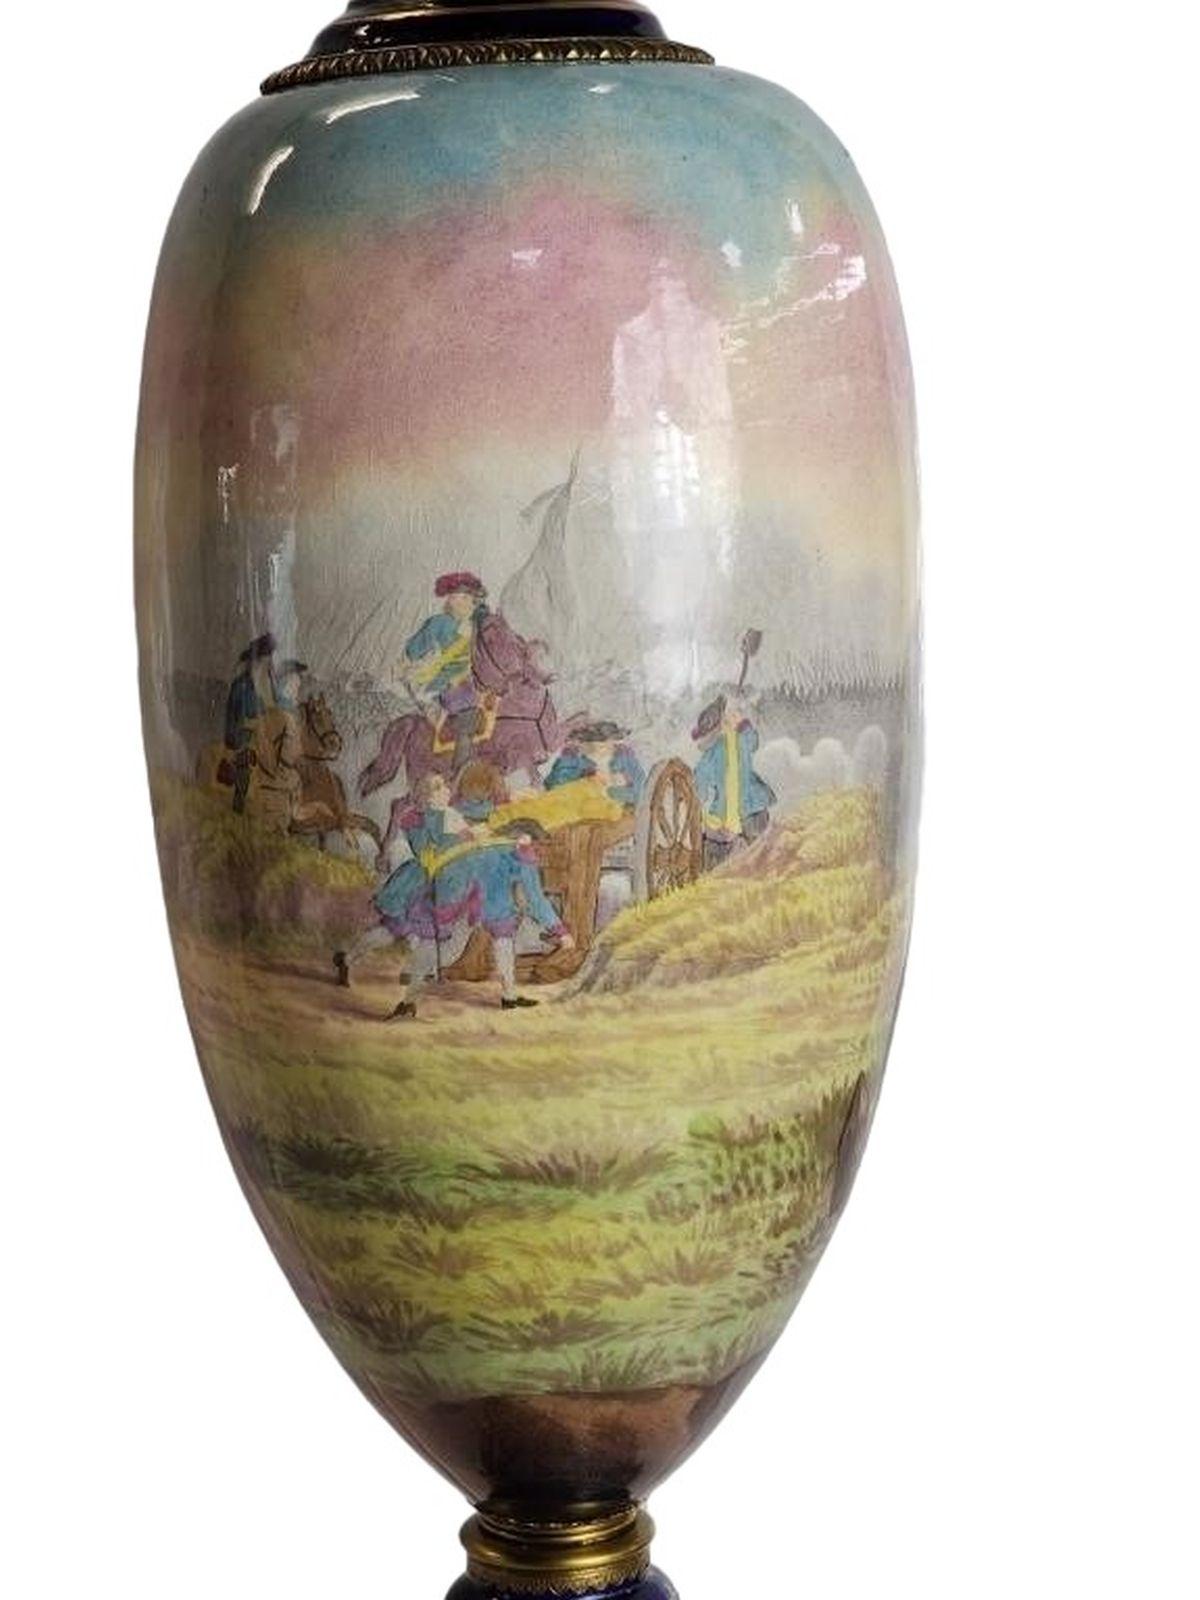 Grand vase à couvercle 3 pièces Sèvres signé avec l'étiquette d'origine du fabricant sur le botom. Mesure environ 36h x 9 de diamètre
